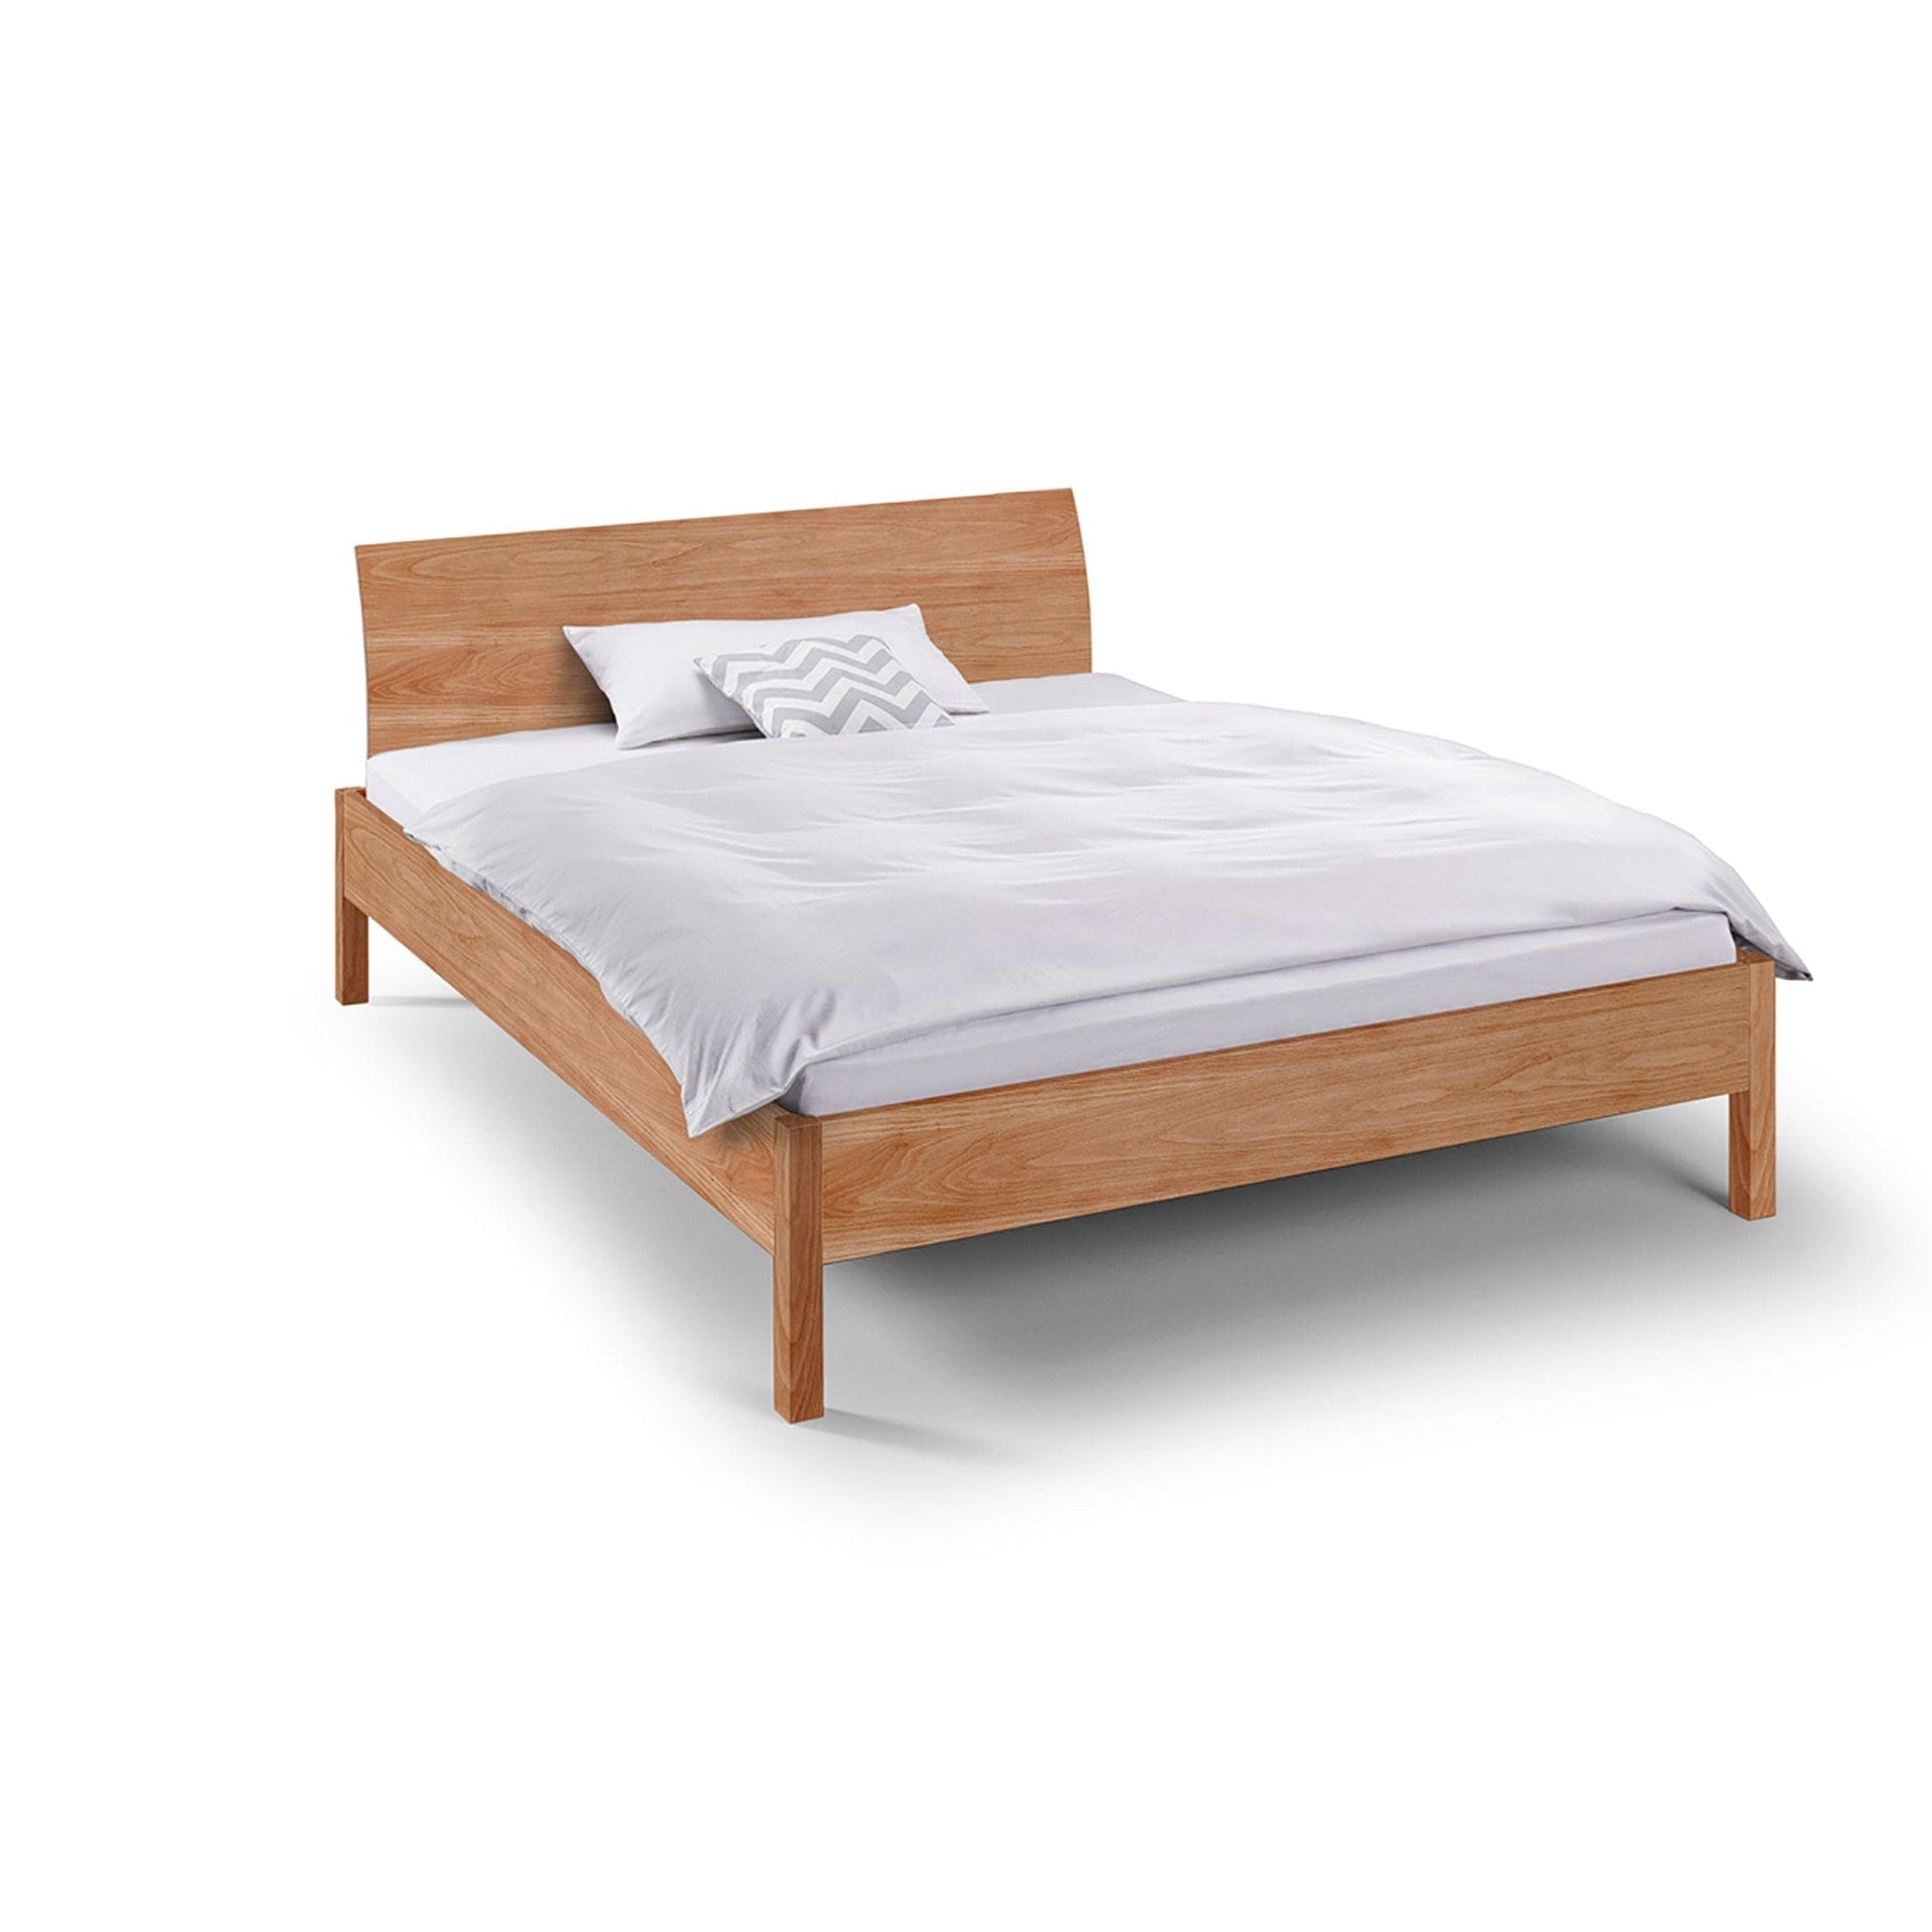 Hochwertiges Massivholz Bett metallfrei in bester Qualität in Buche